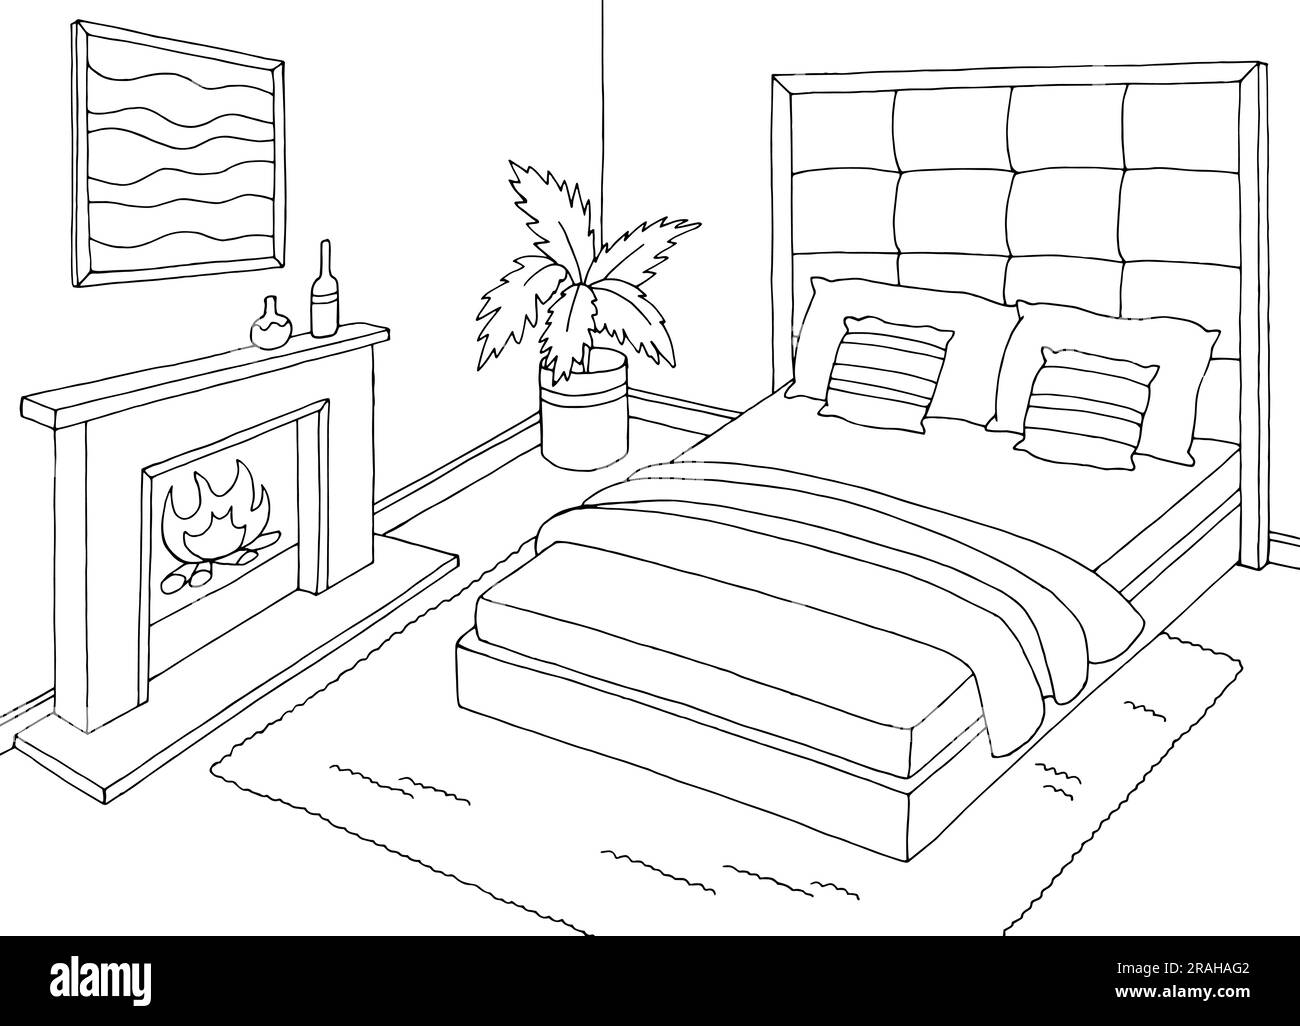 Schlafzimmer Grafik schwarz weiß Haus Interieur Skizze Illustration Vektor Stock Vektor